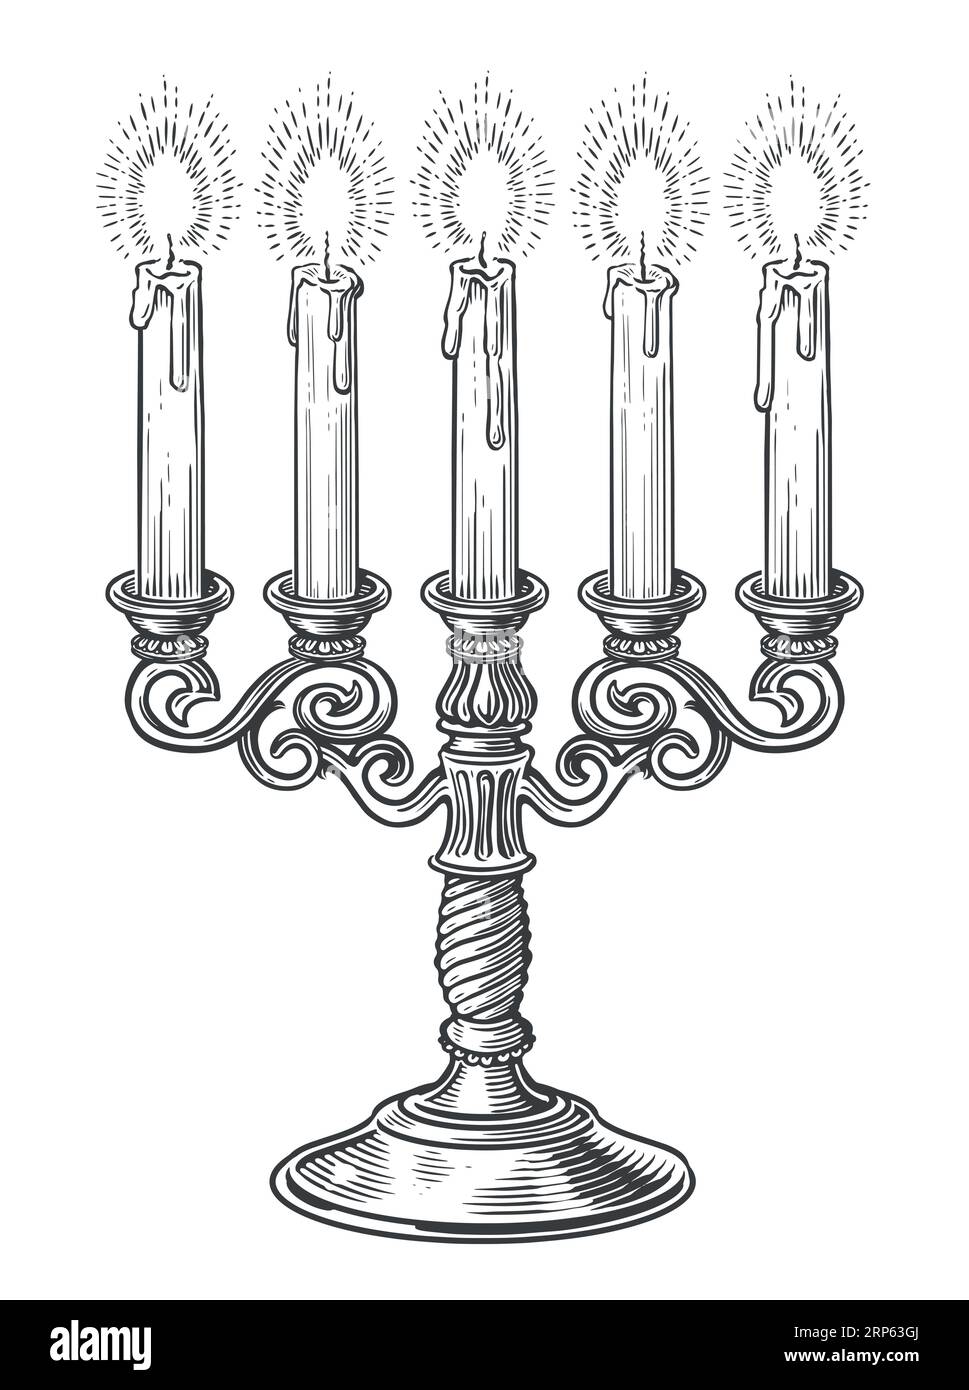 Candelabro in ottone vintage con cinque candele a fuoco in stile incisione. Illustrazione vettoriale dello schizzo del candelabro disegnato a mano Illustrazione Vettoriale